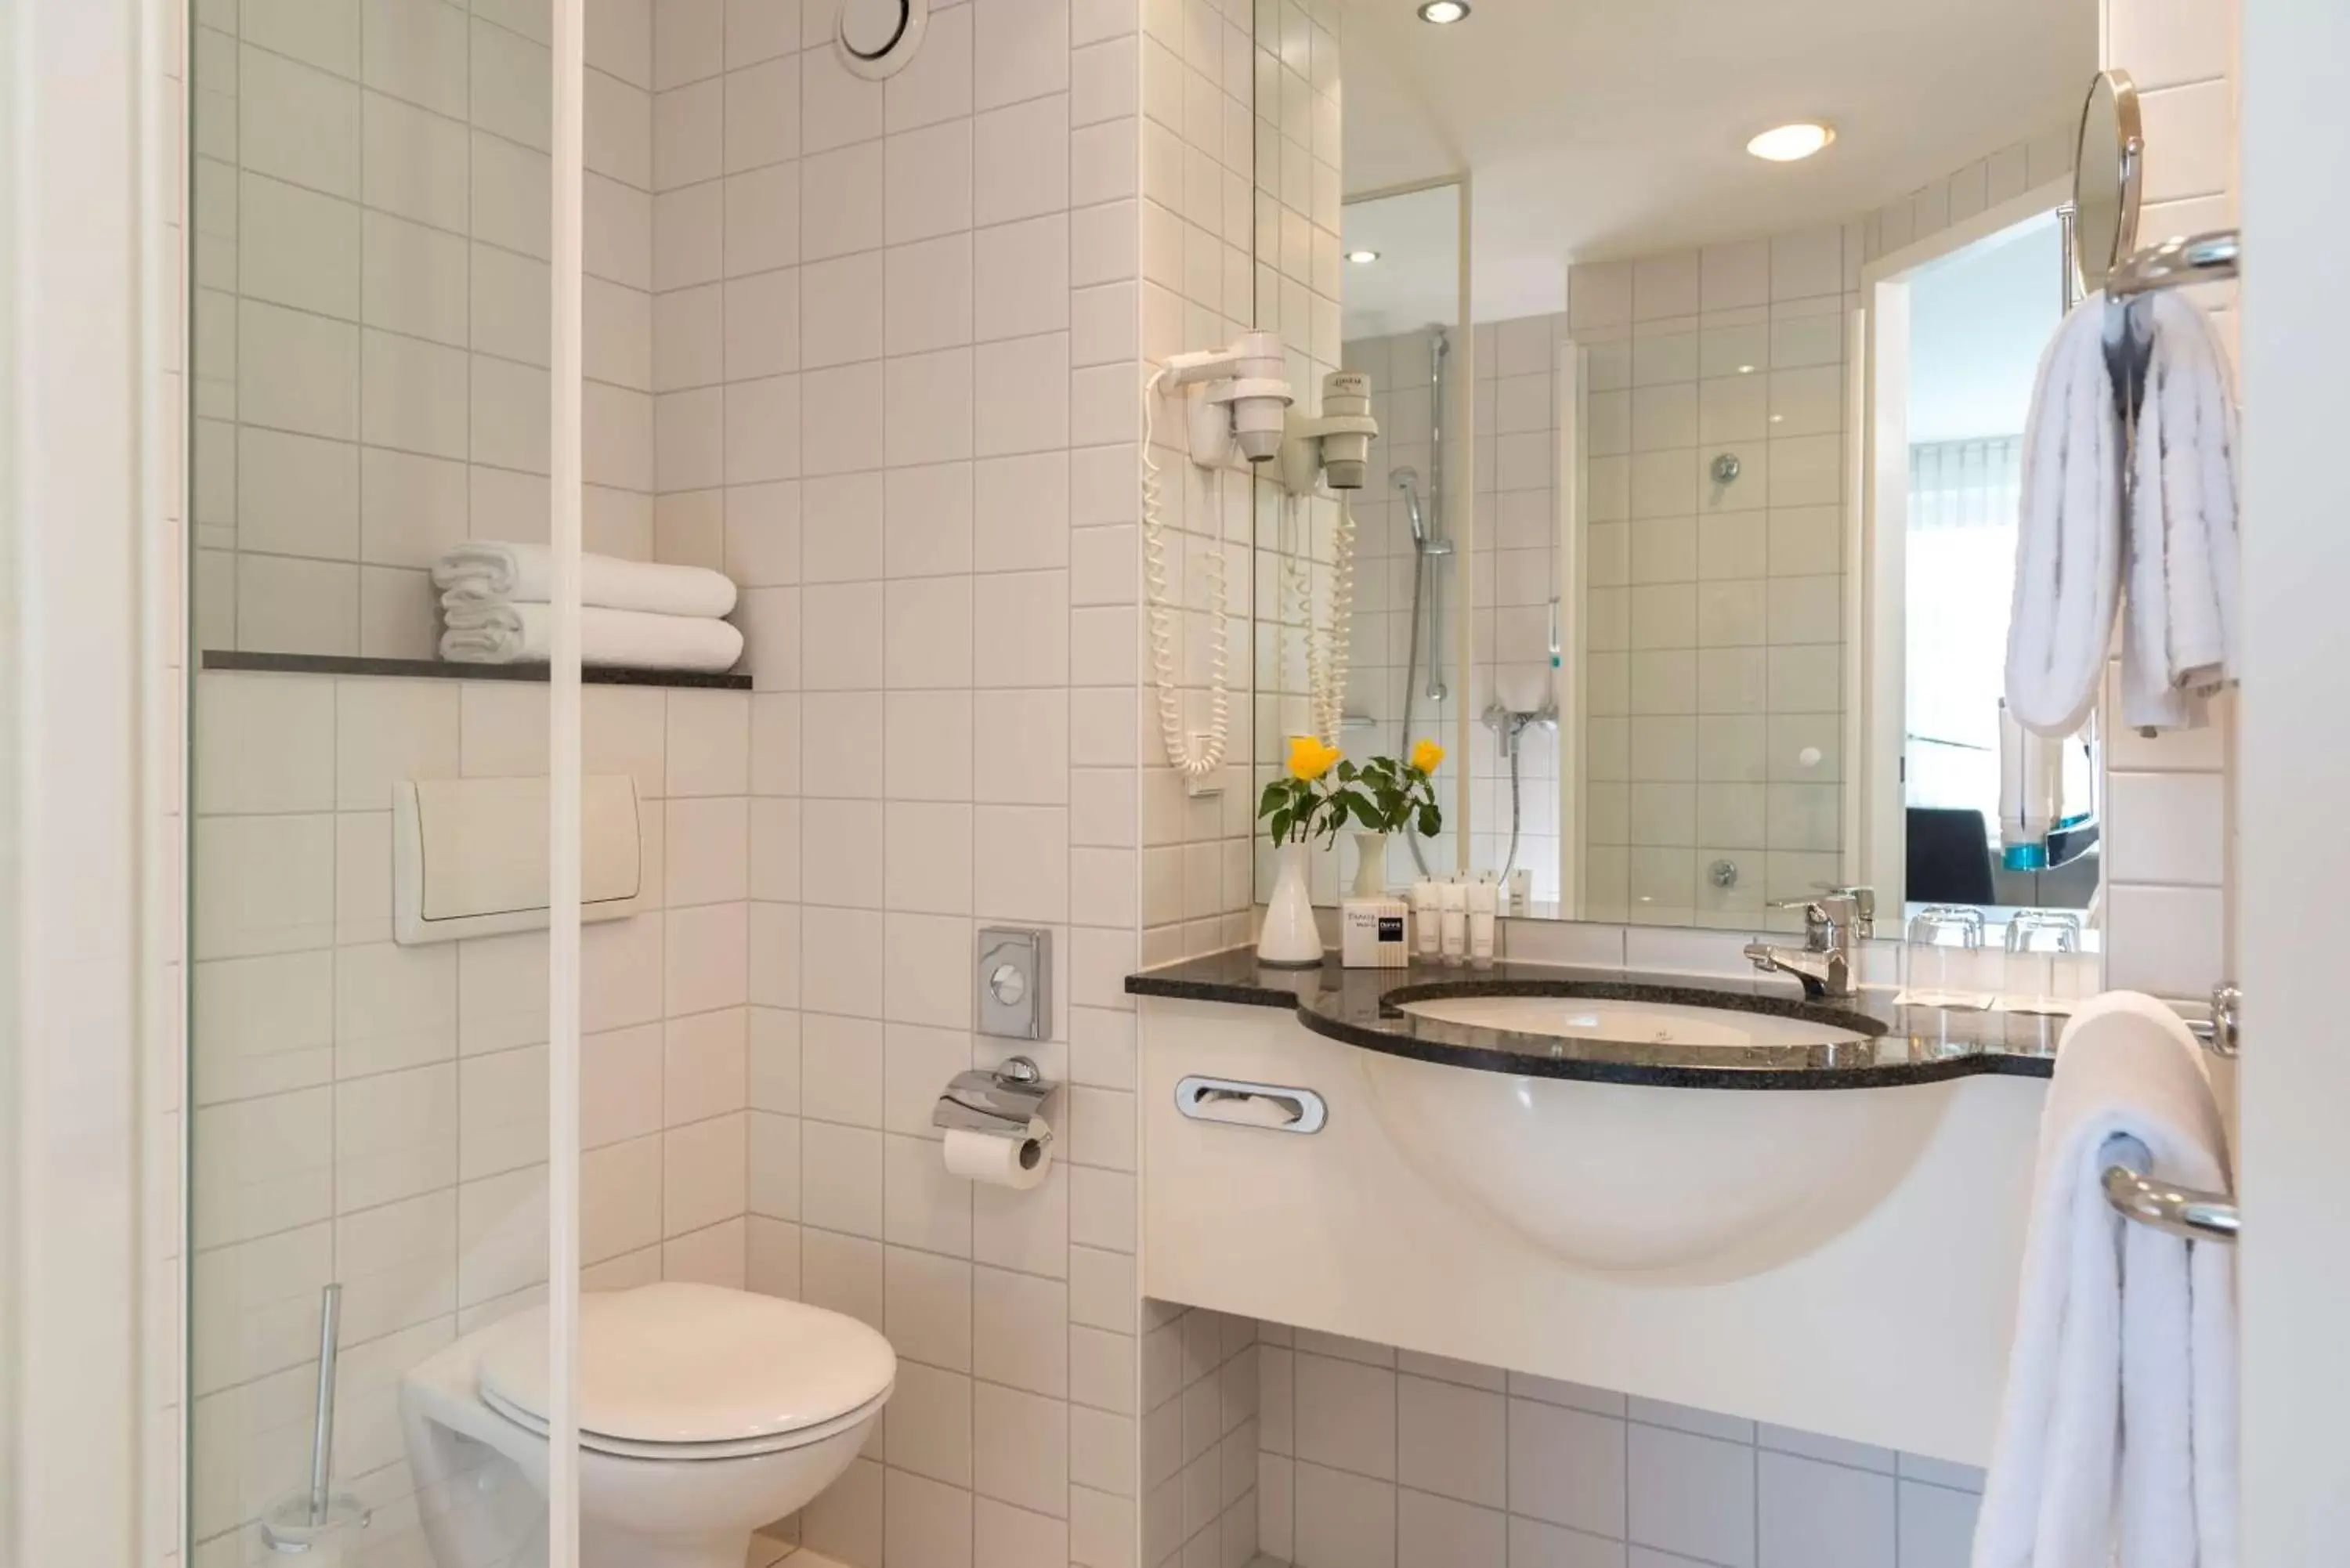 Photo of the whole room, Bathroom in Essential by Dorint Berlin-Adlershof